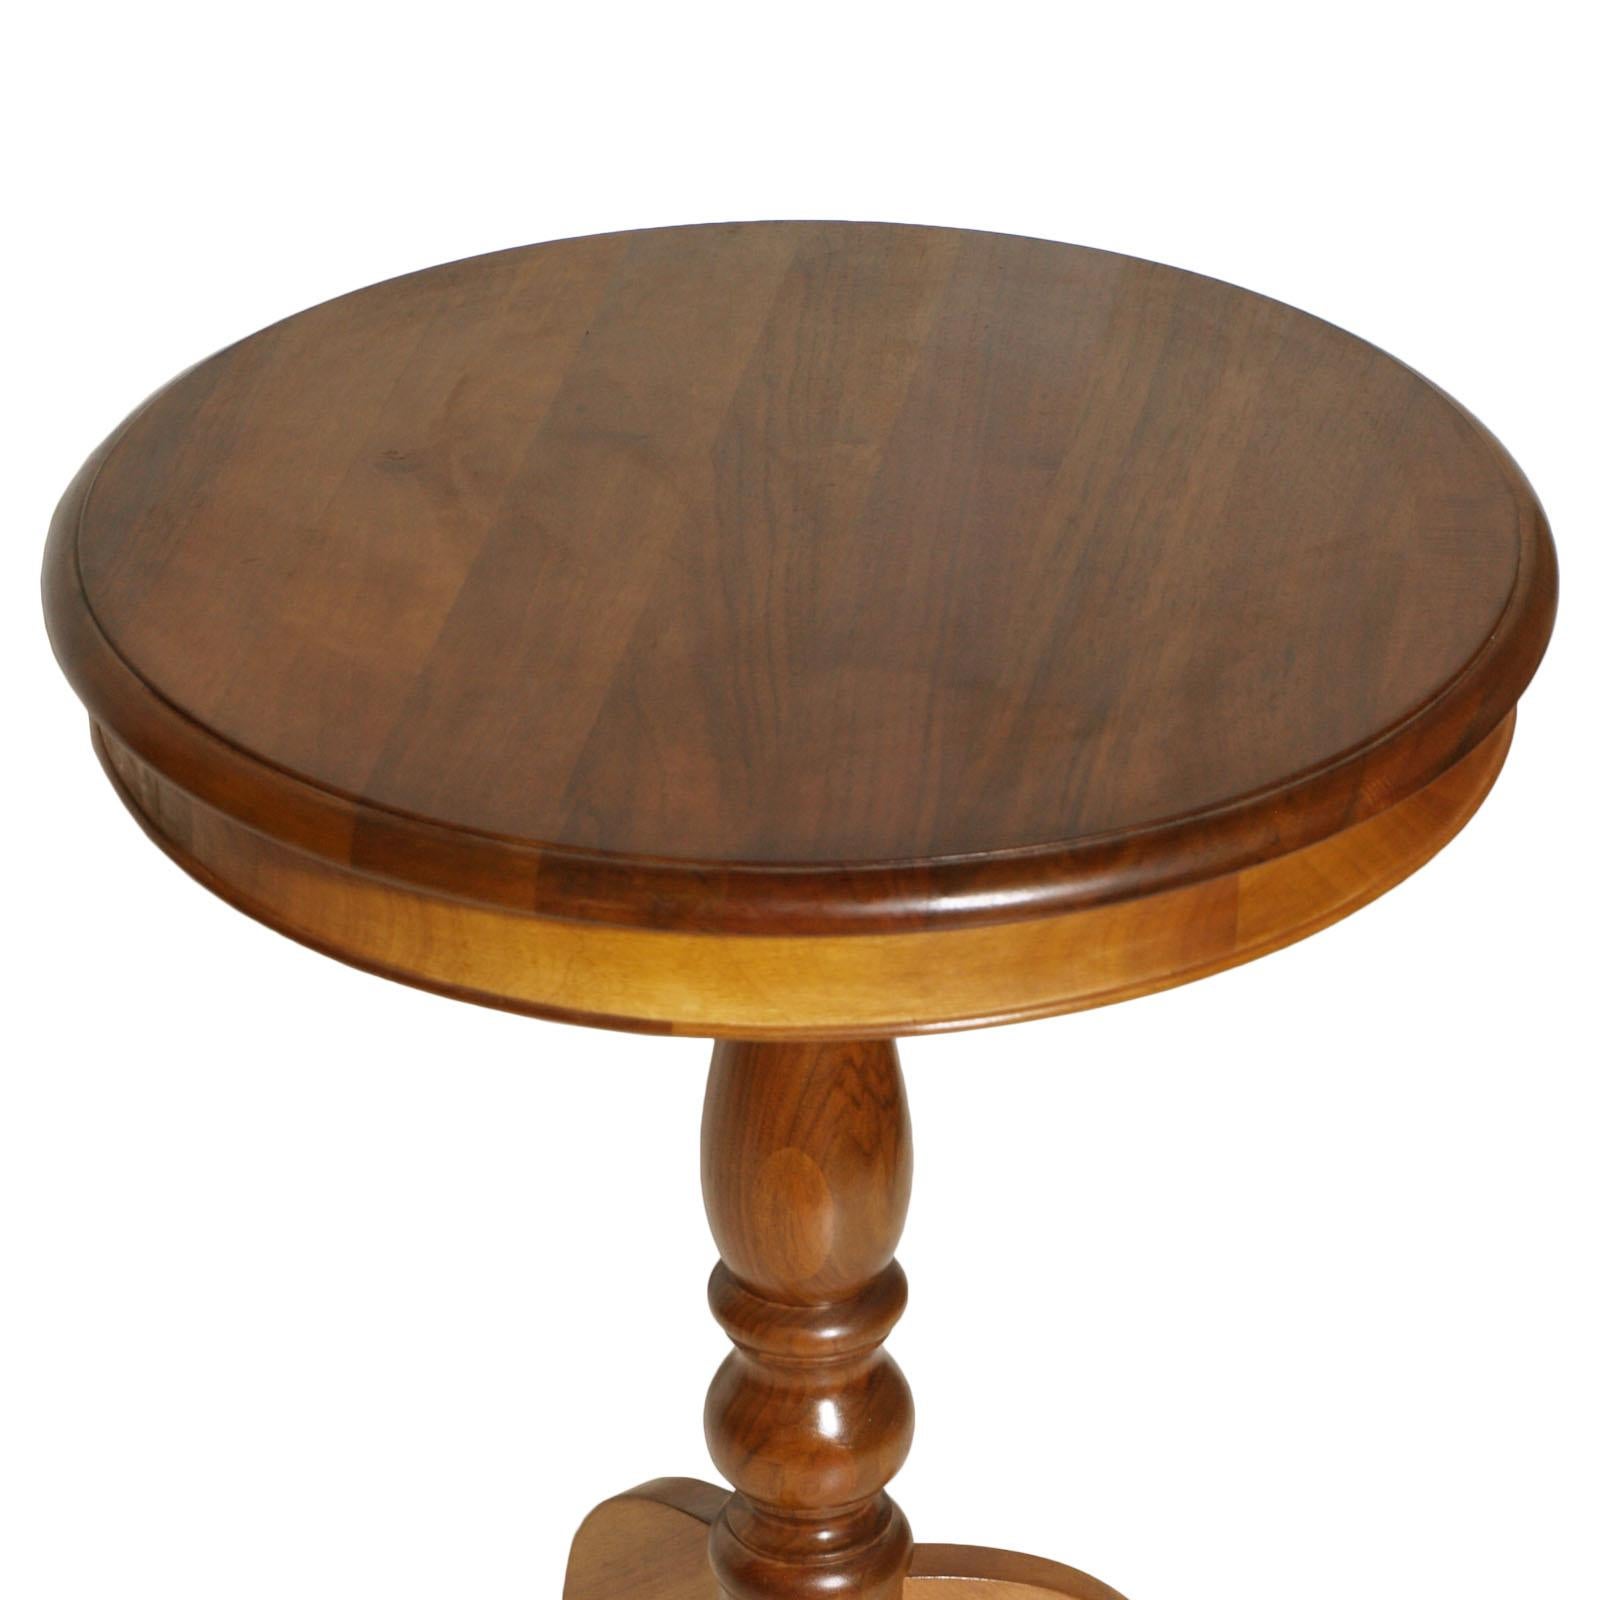 table d'appoint ou table basse néoclassique italienne des années 1940, en noyer blond massif poli à la cire 

Mesures cm : Hauteur 75, diamètre 60.